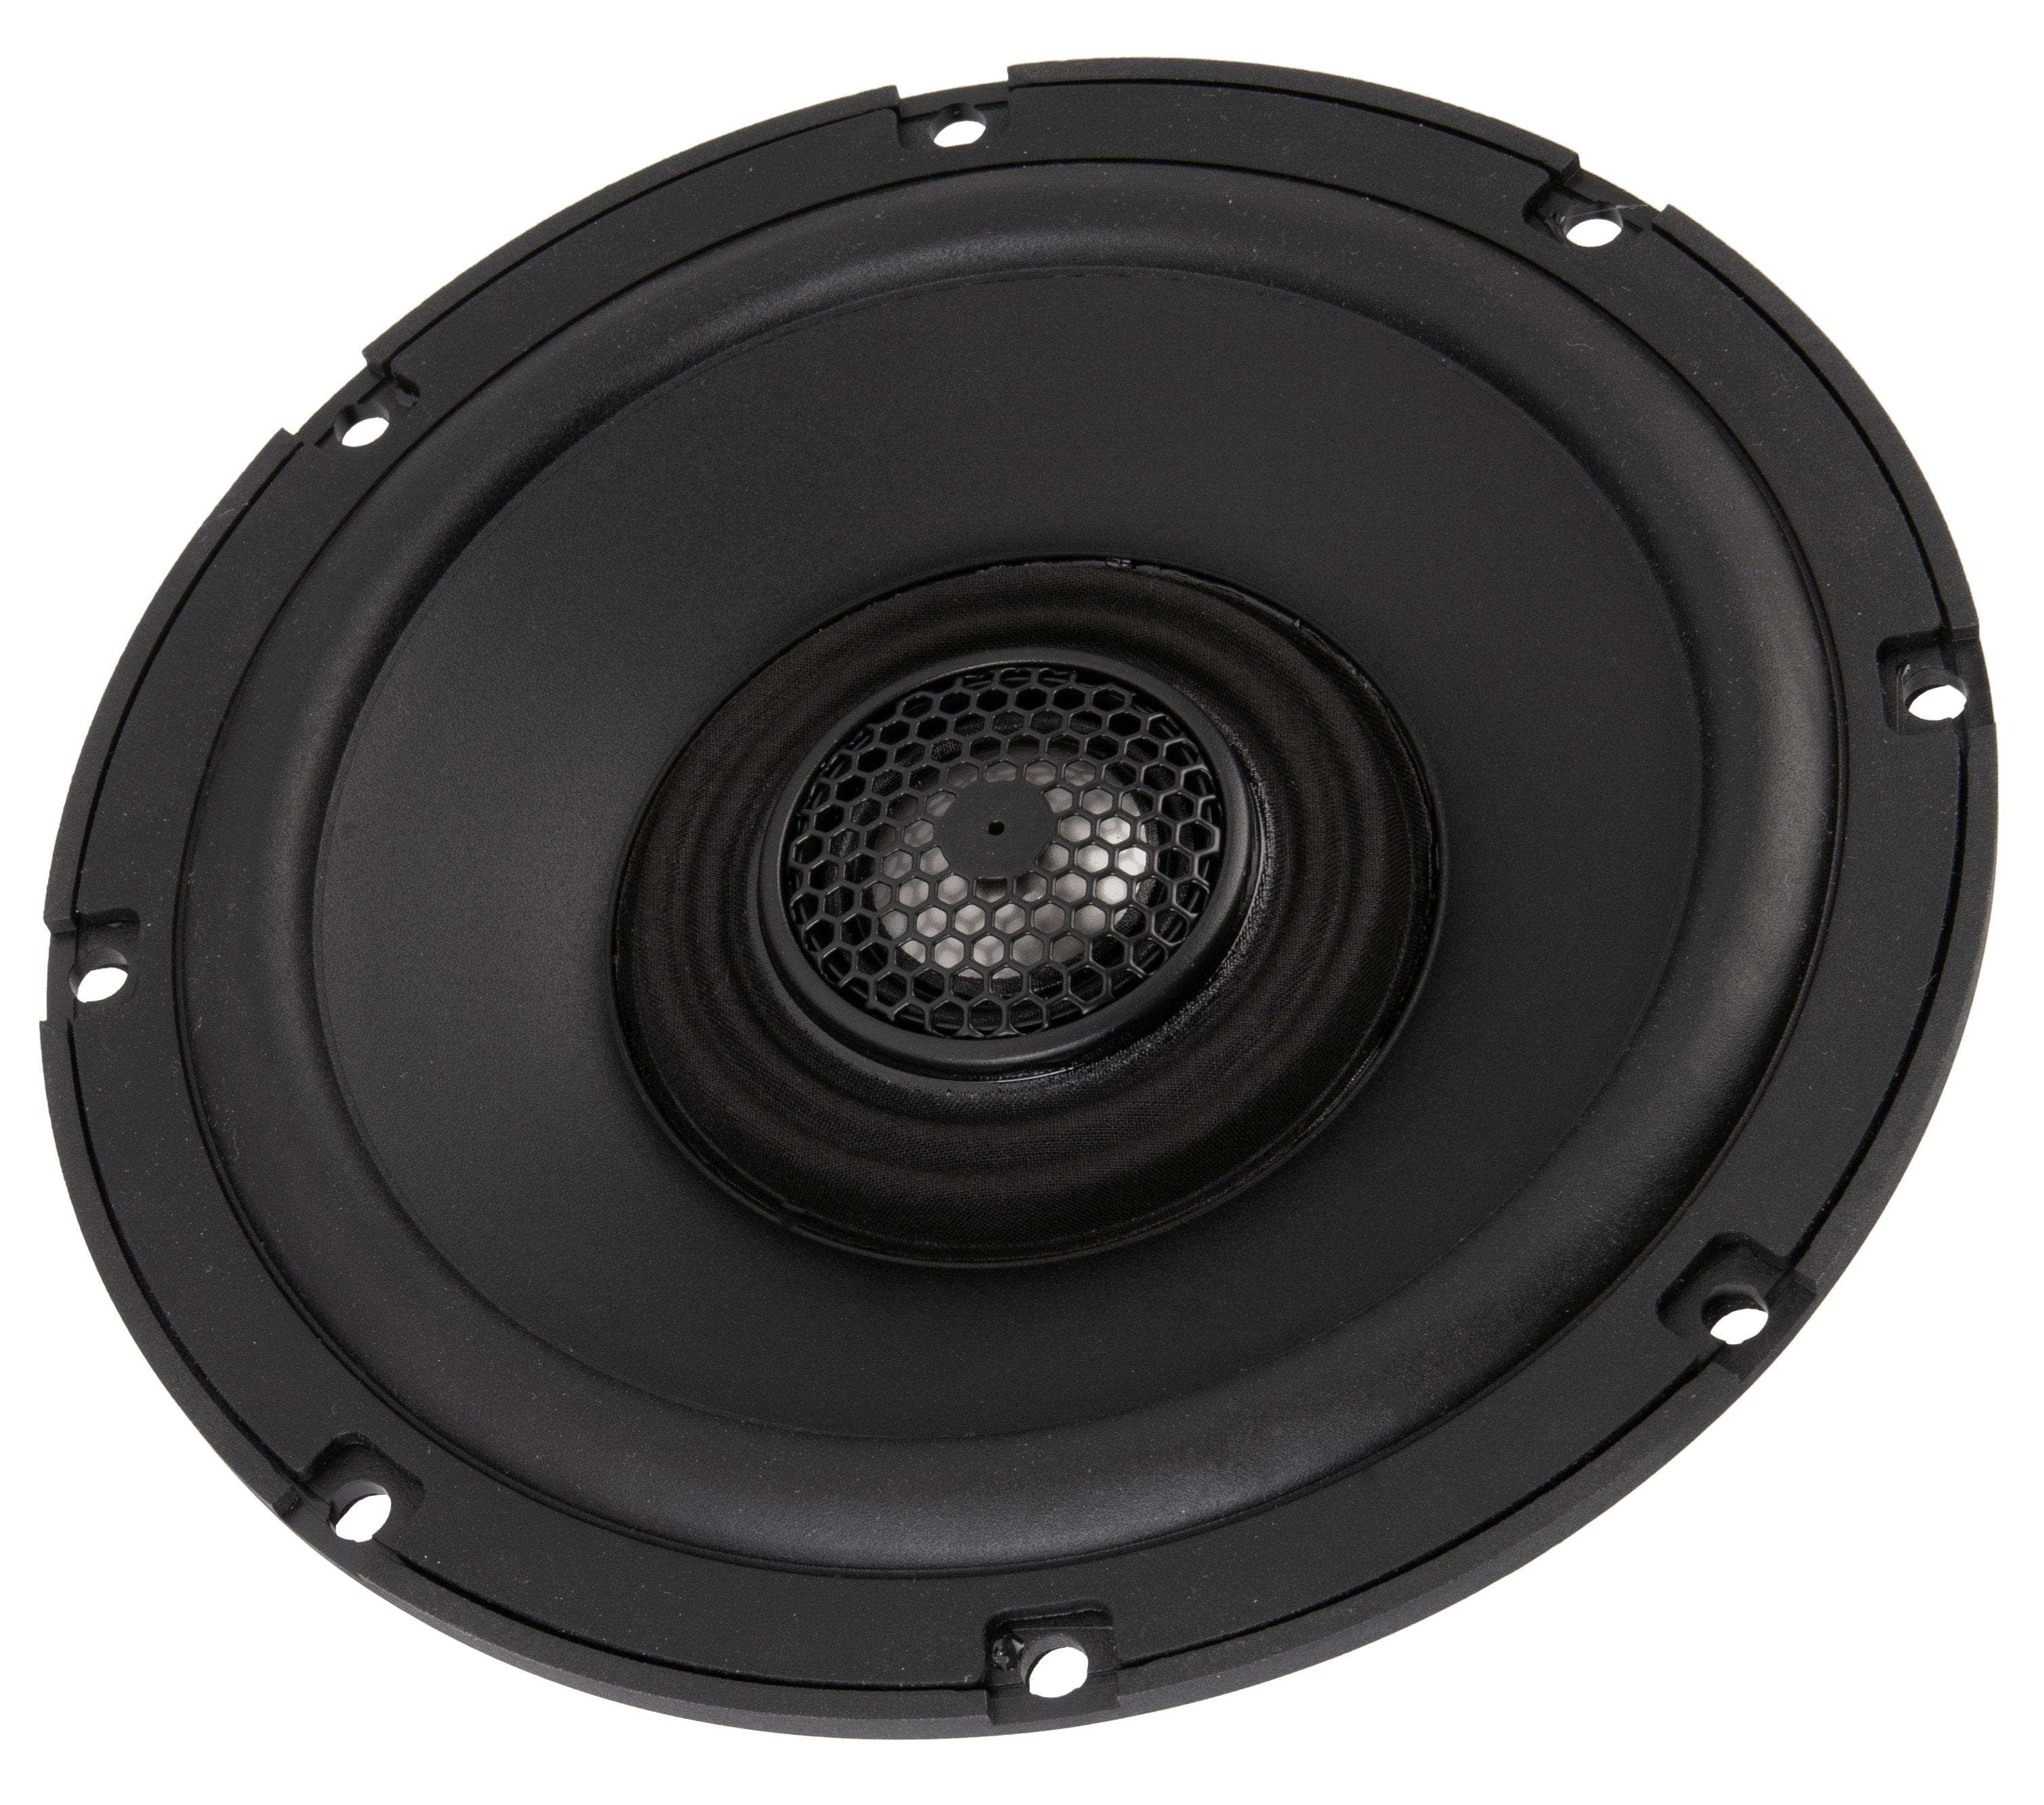 Soundstream Audio - Speakers Soundstream 6.5" (4Ω) Fairing Speaker Upgrade Kit for 2014+ HD Touring Models